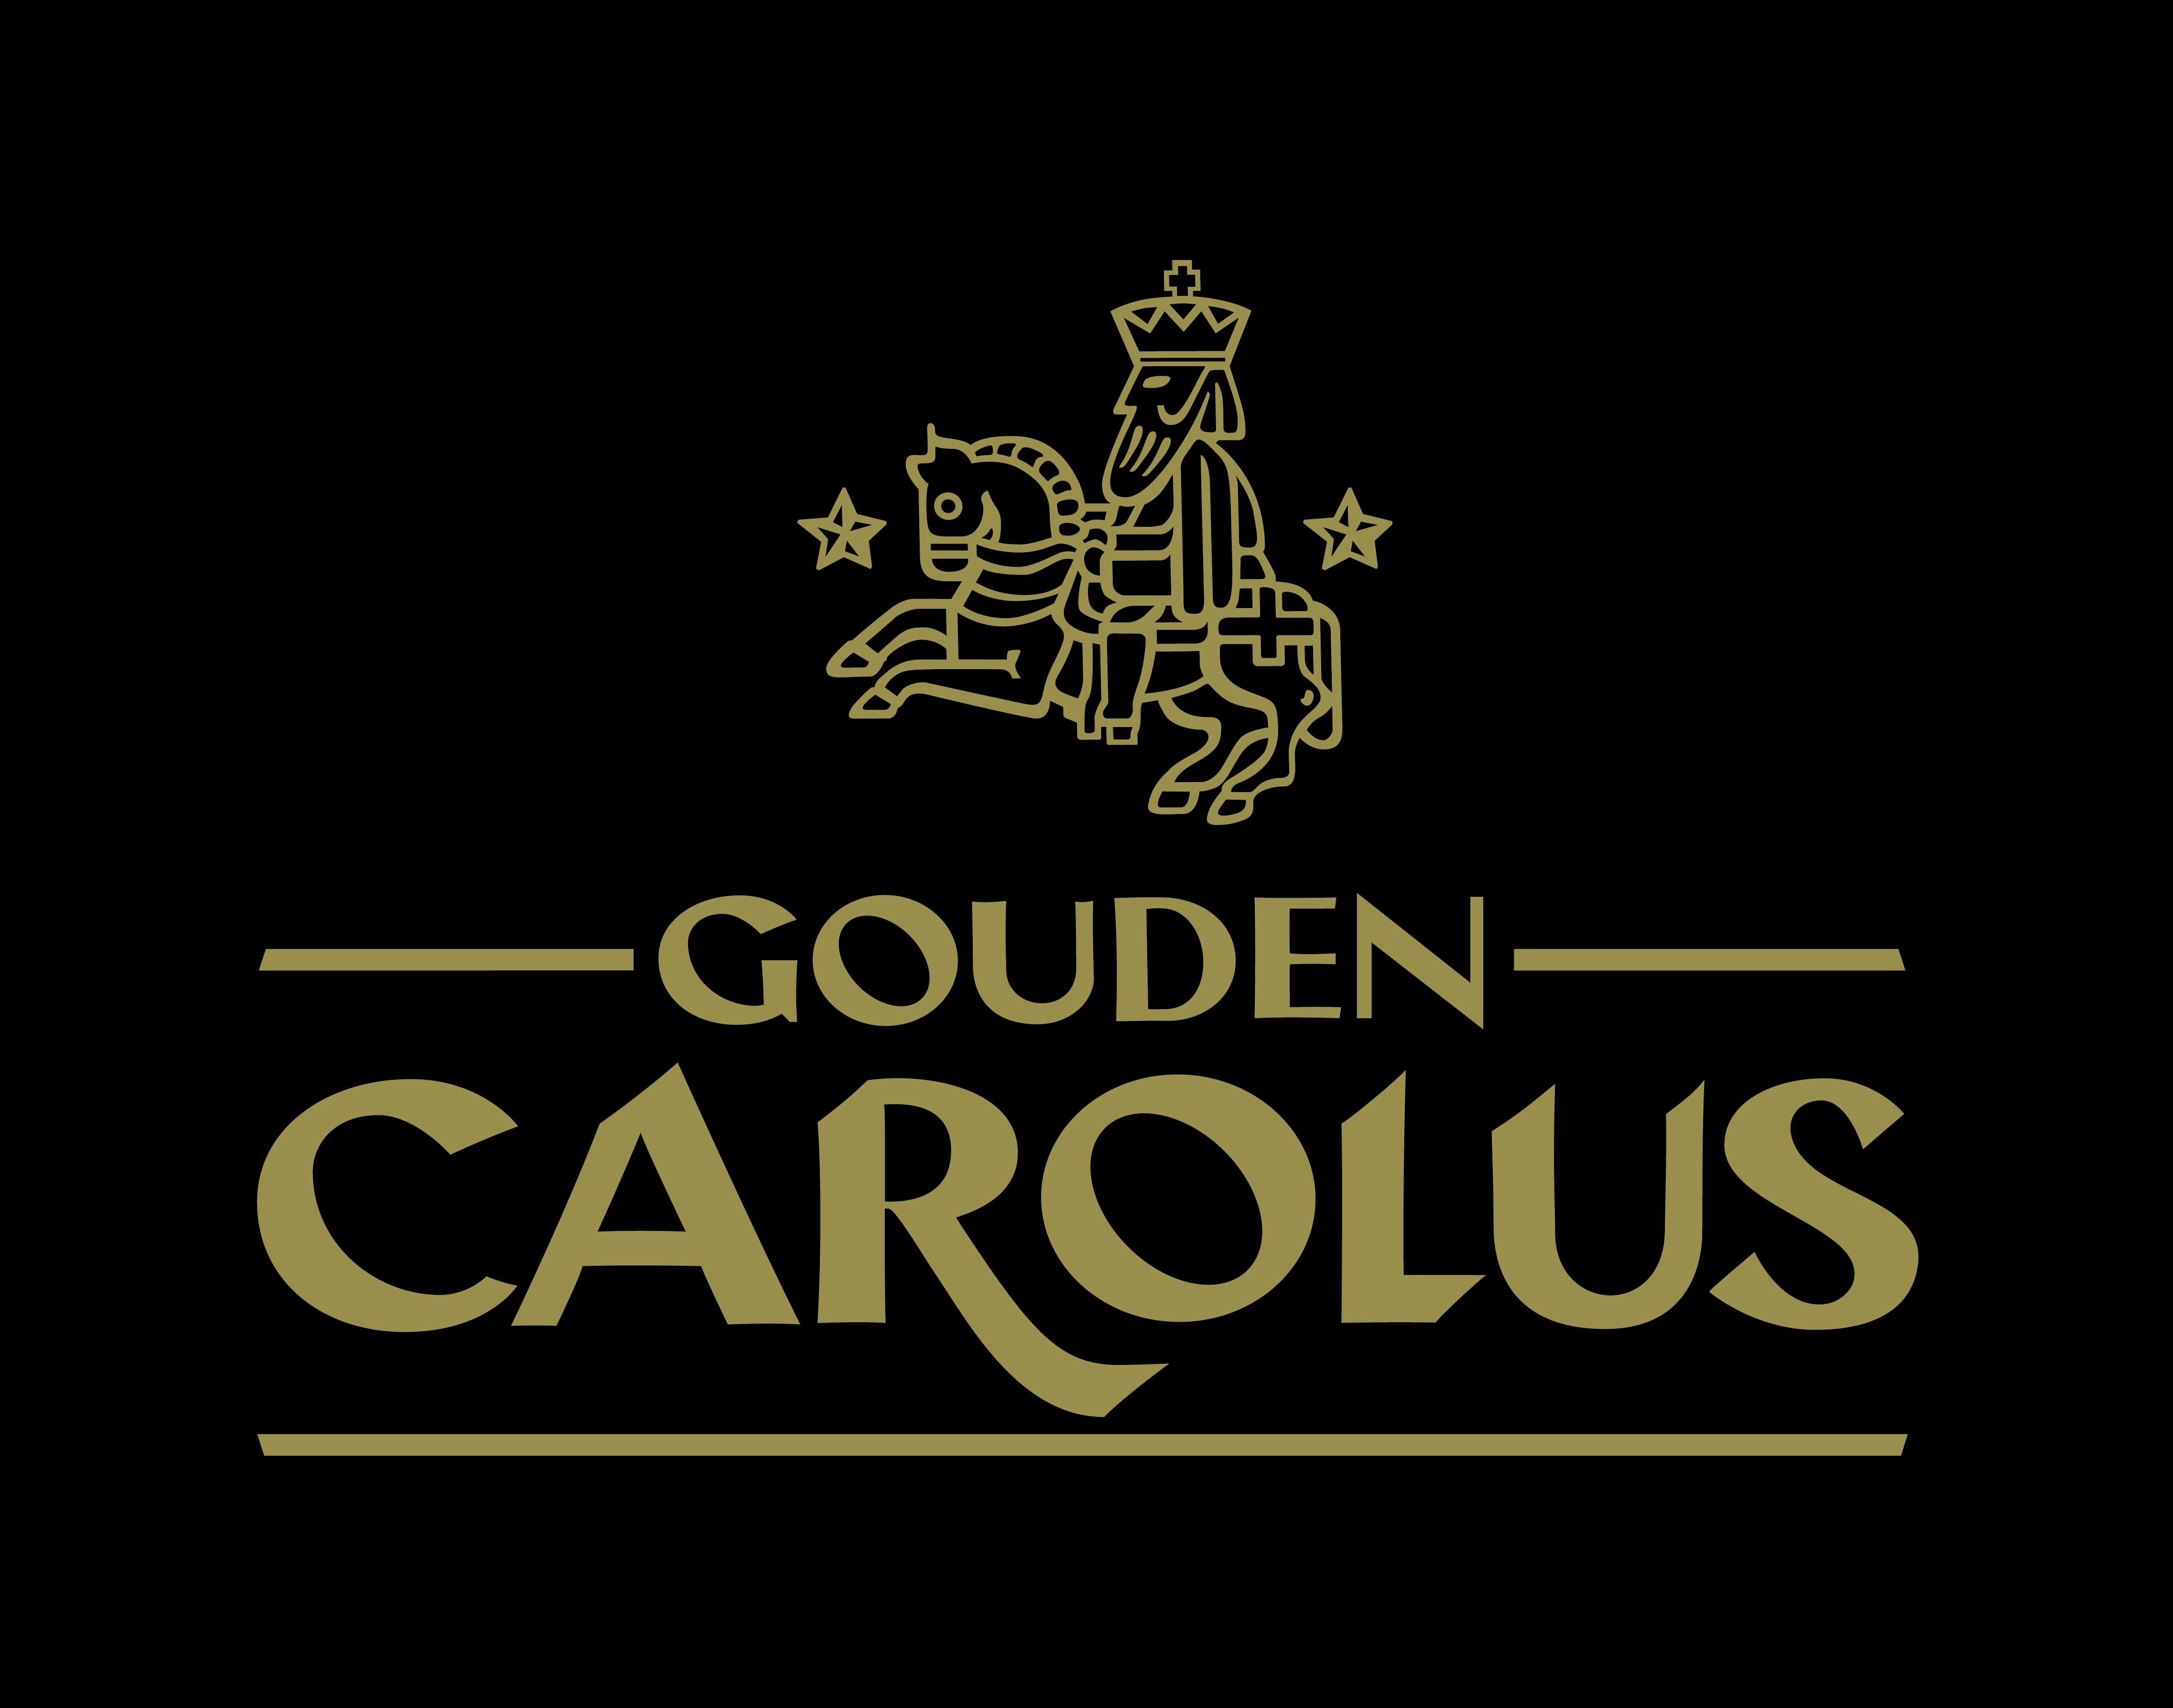 Gouden Carolus - Het Anker